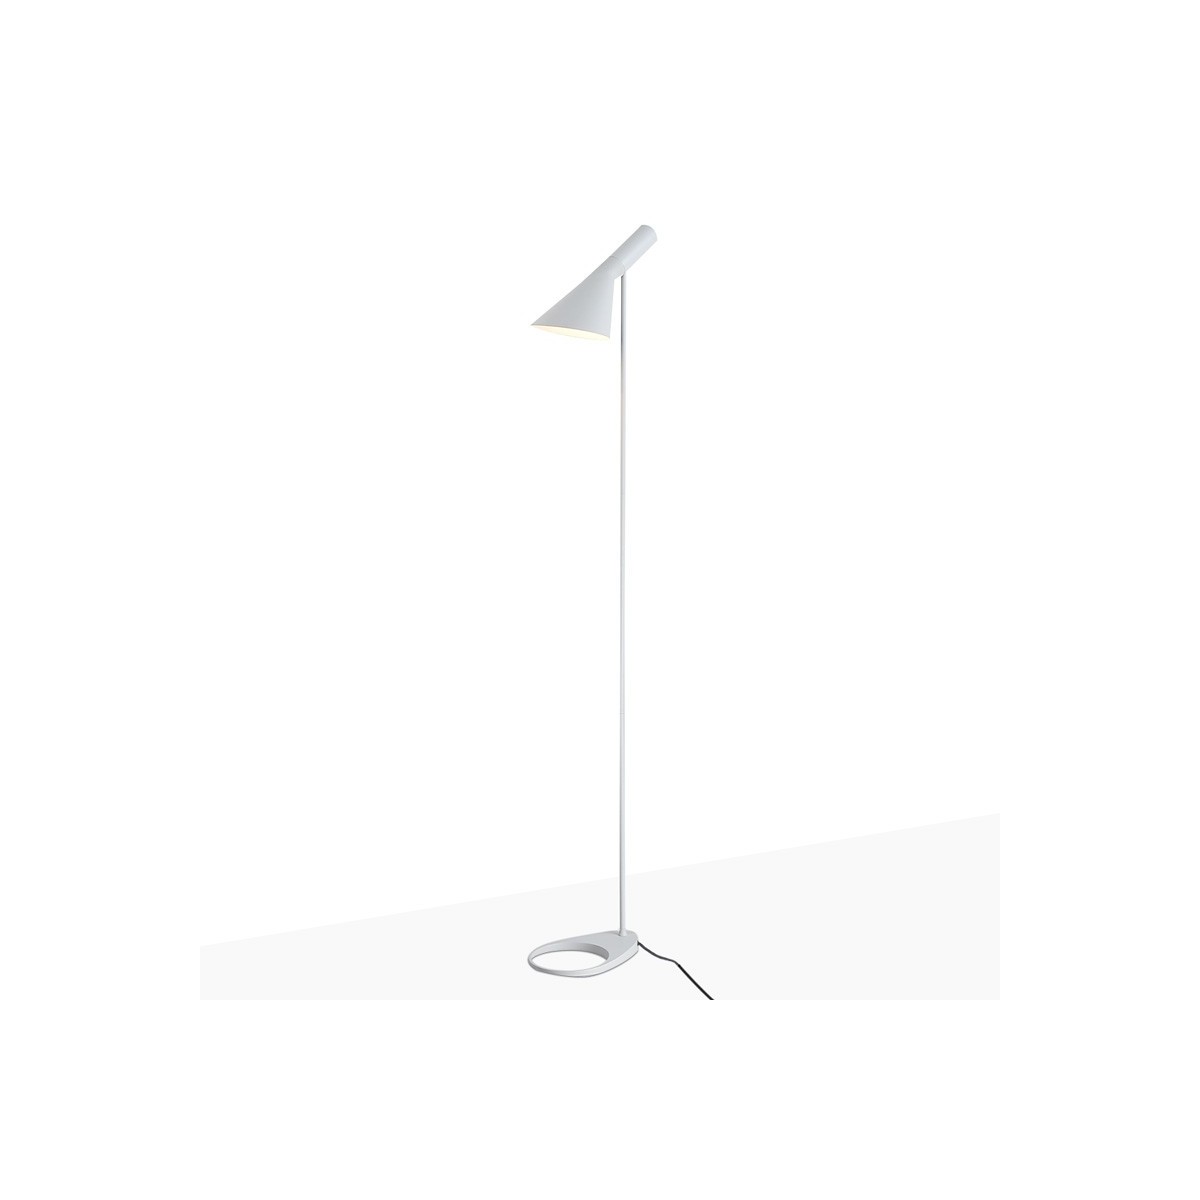 Skandi Stehlampe E27 - Arne Jacobsen Inspiration